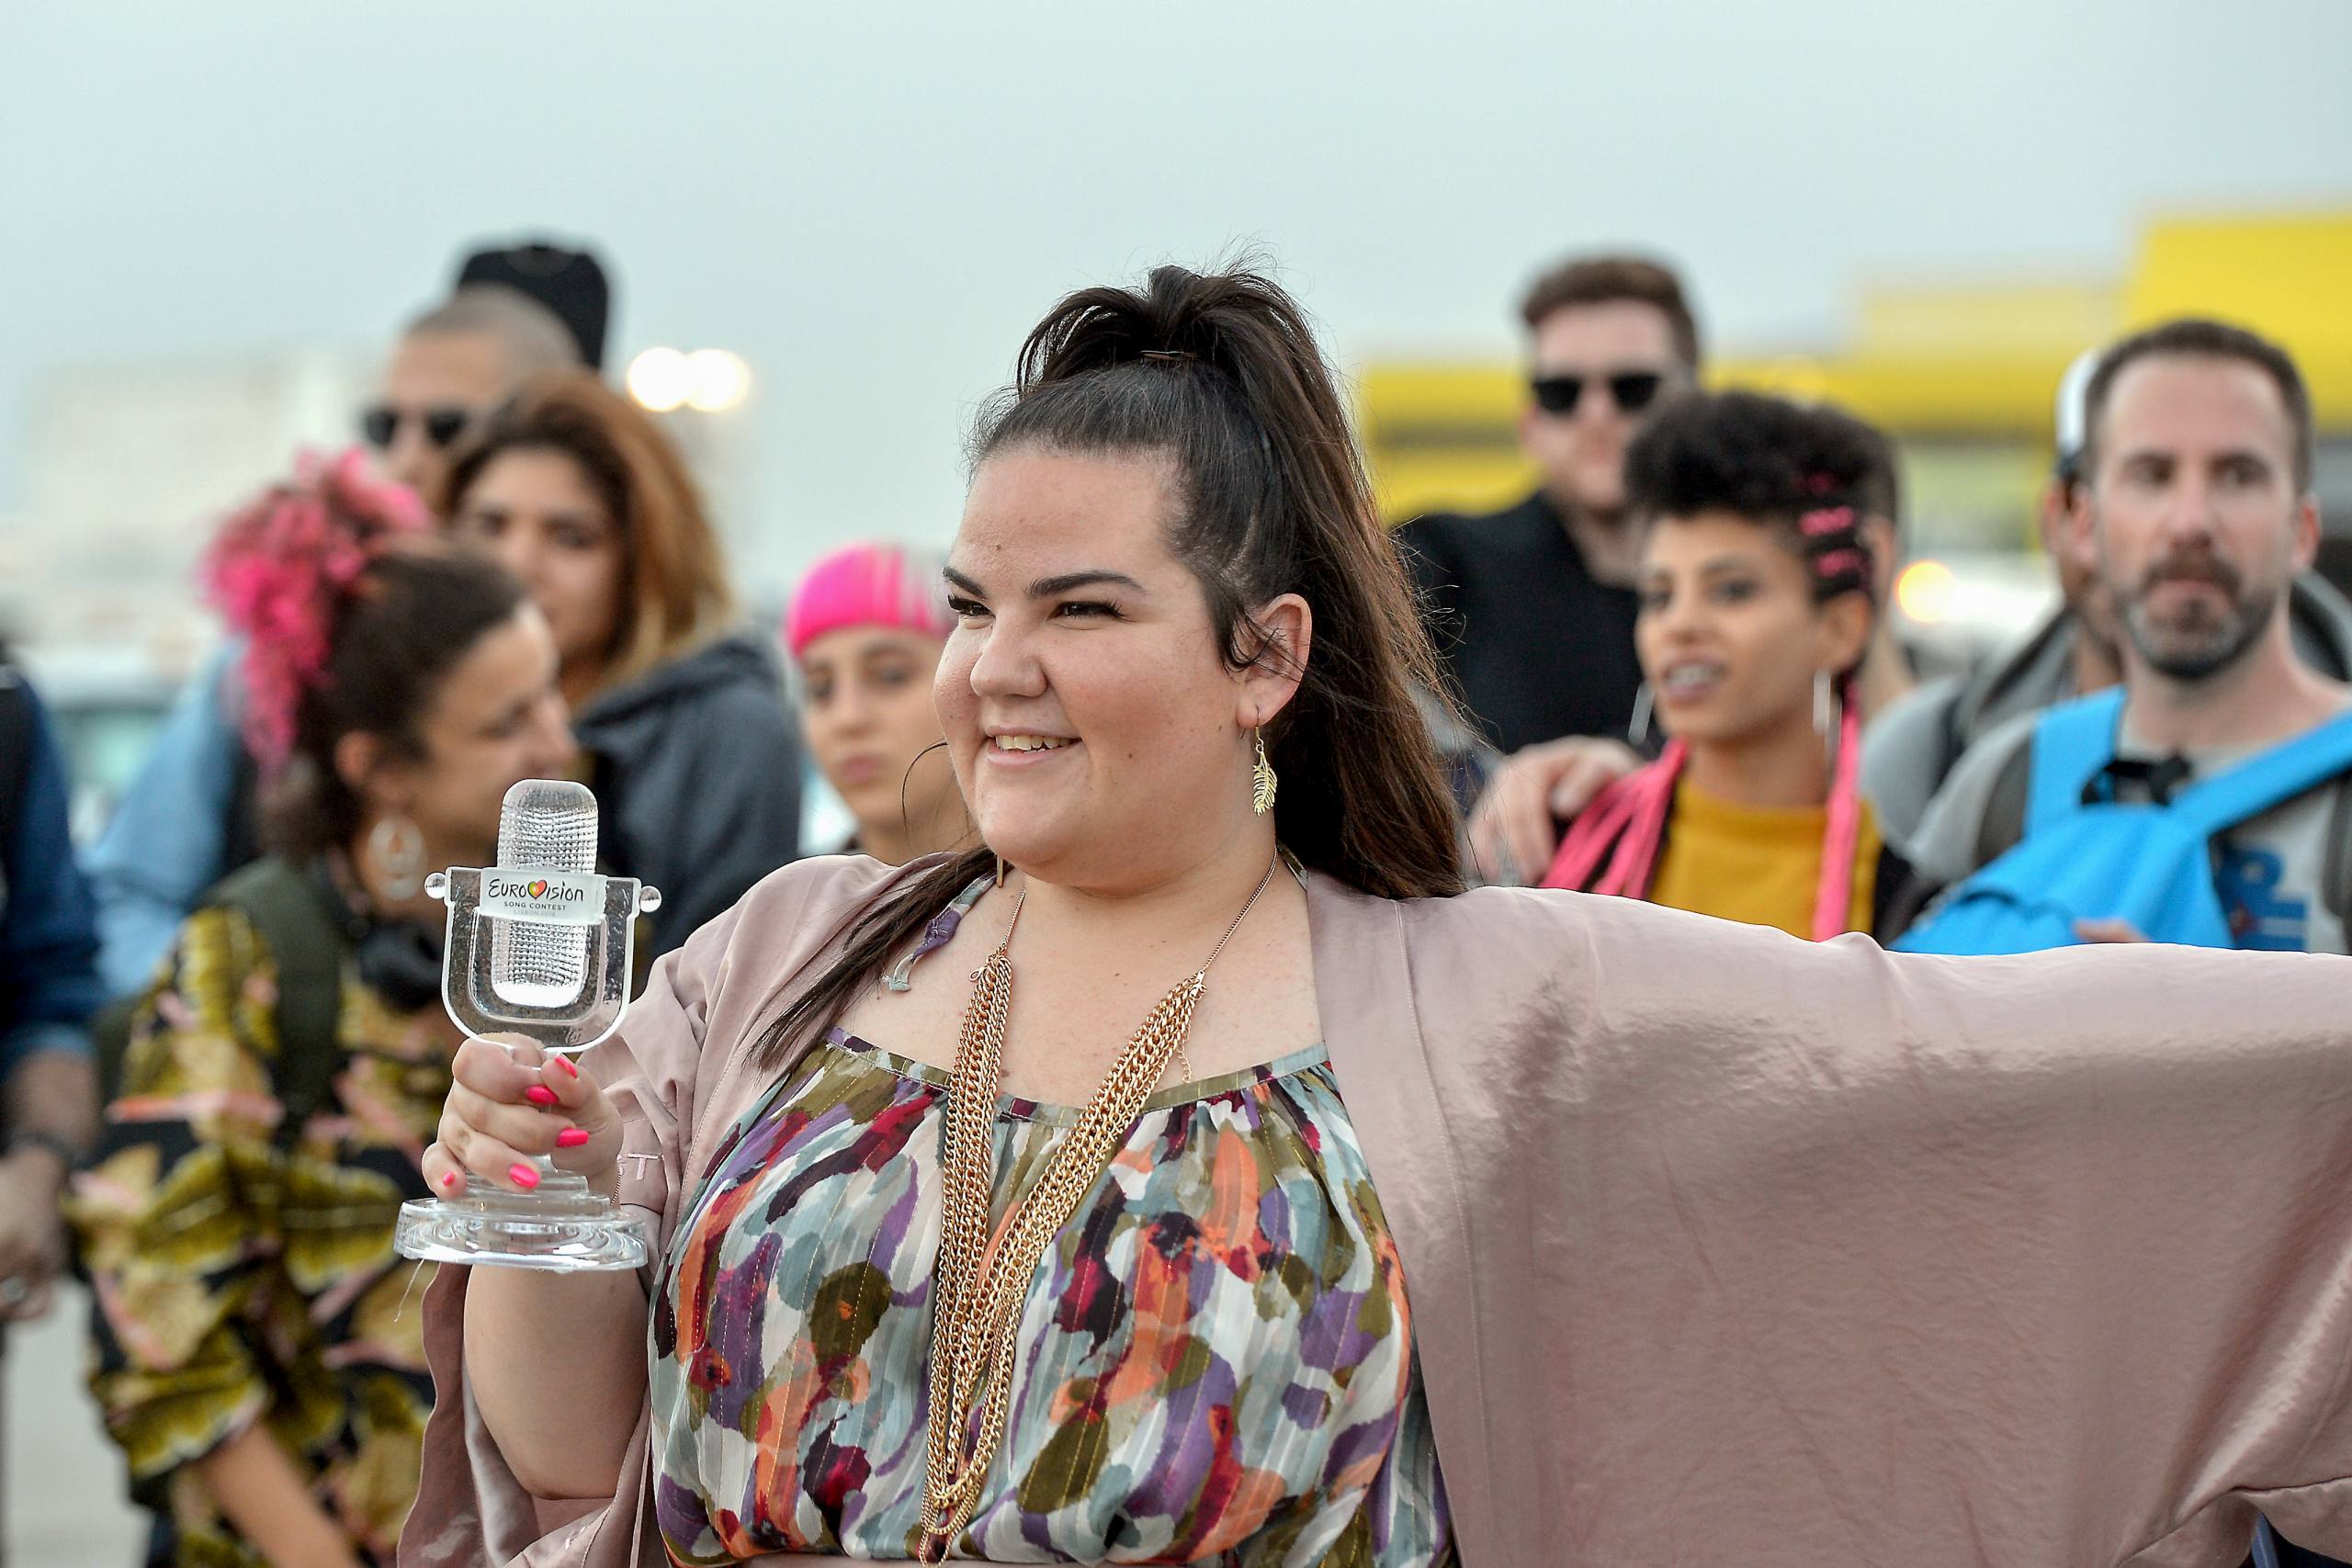 Winner of the eurovision 2018 song contest Netta Barzilai seen as she arrives to Ben Gurion international airport on May 14, 2018. Photo by Flash90 *** Local Caption *** úøáåú
äåôòä
áï âåøéåï
úì àáéá
äàéøååéæéåï
ðèò